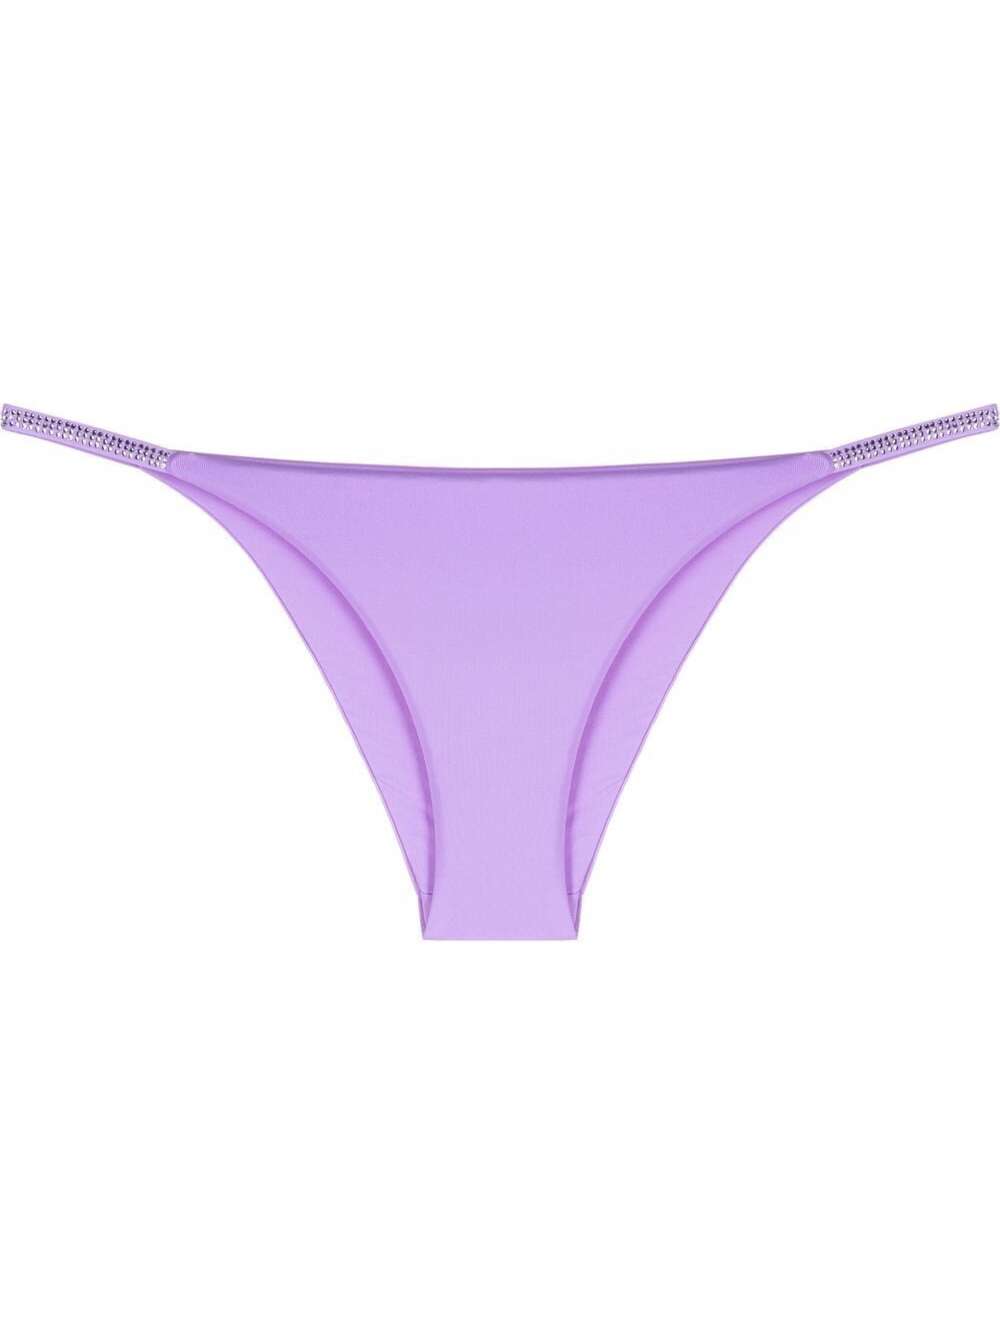 Fisico - Cristina Ferrari Fisico Womans Lilac Bikini Bottom With Glitter Details